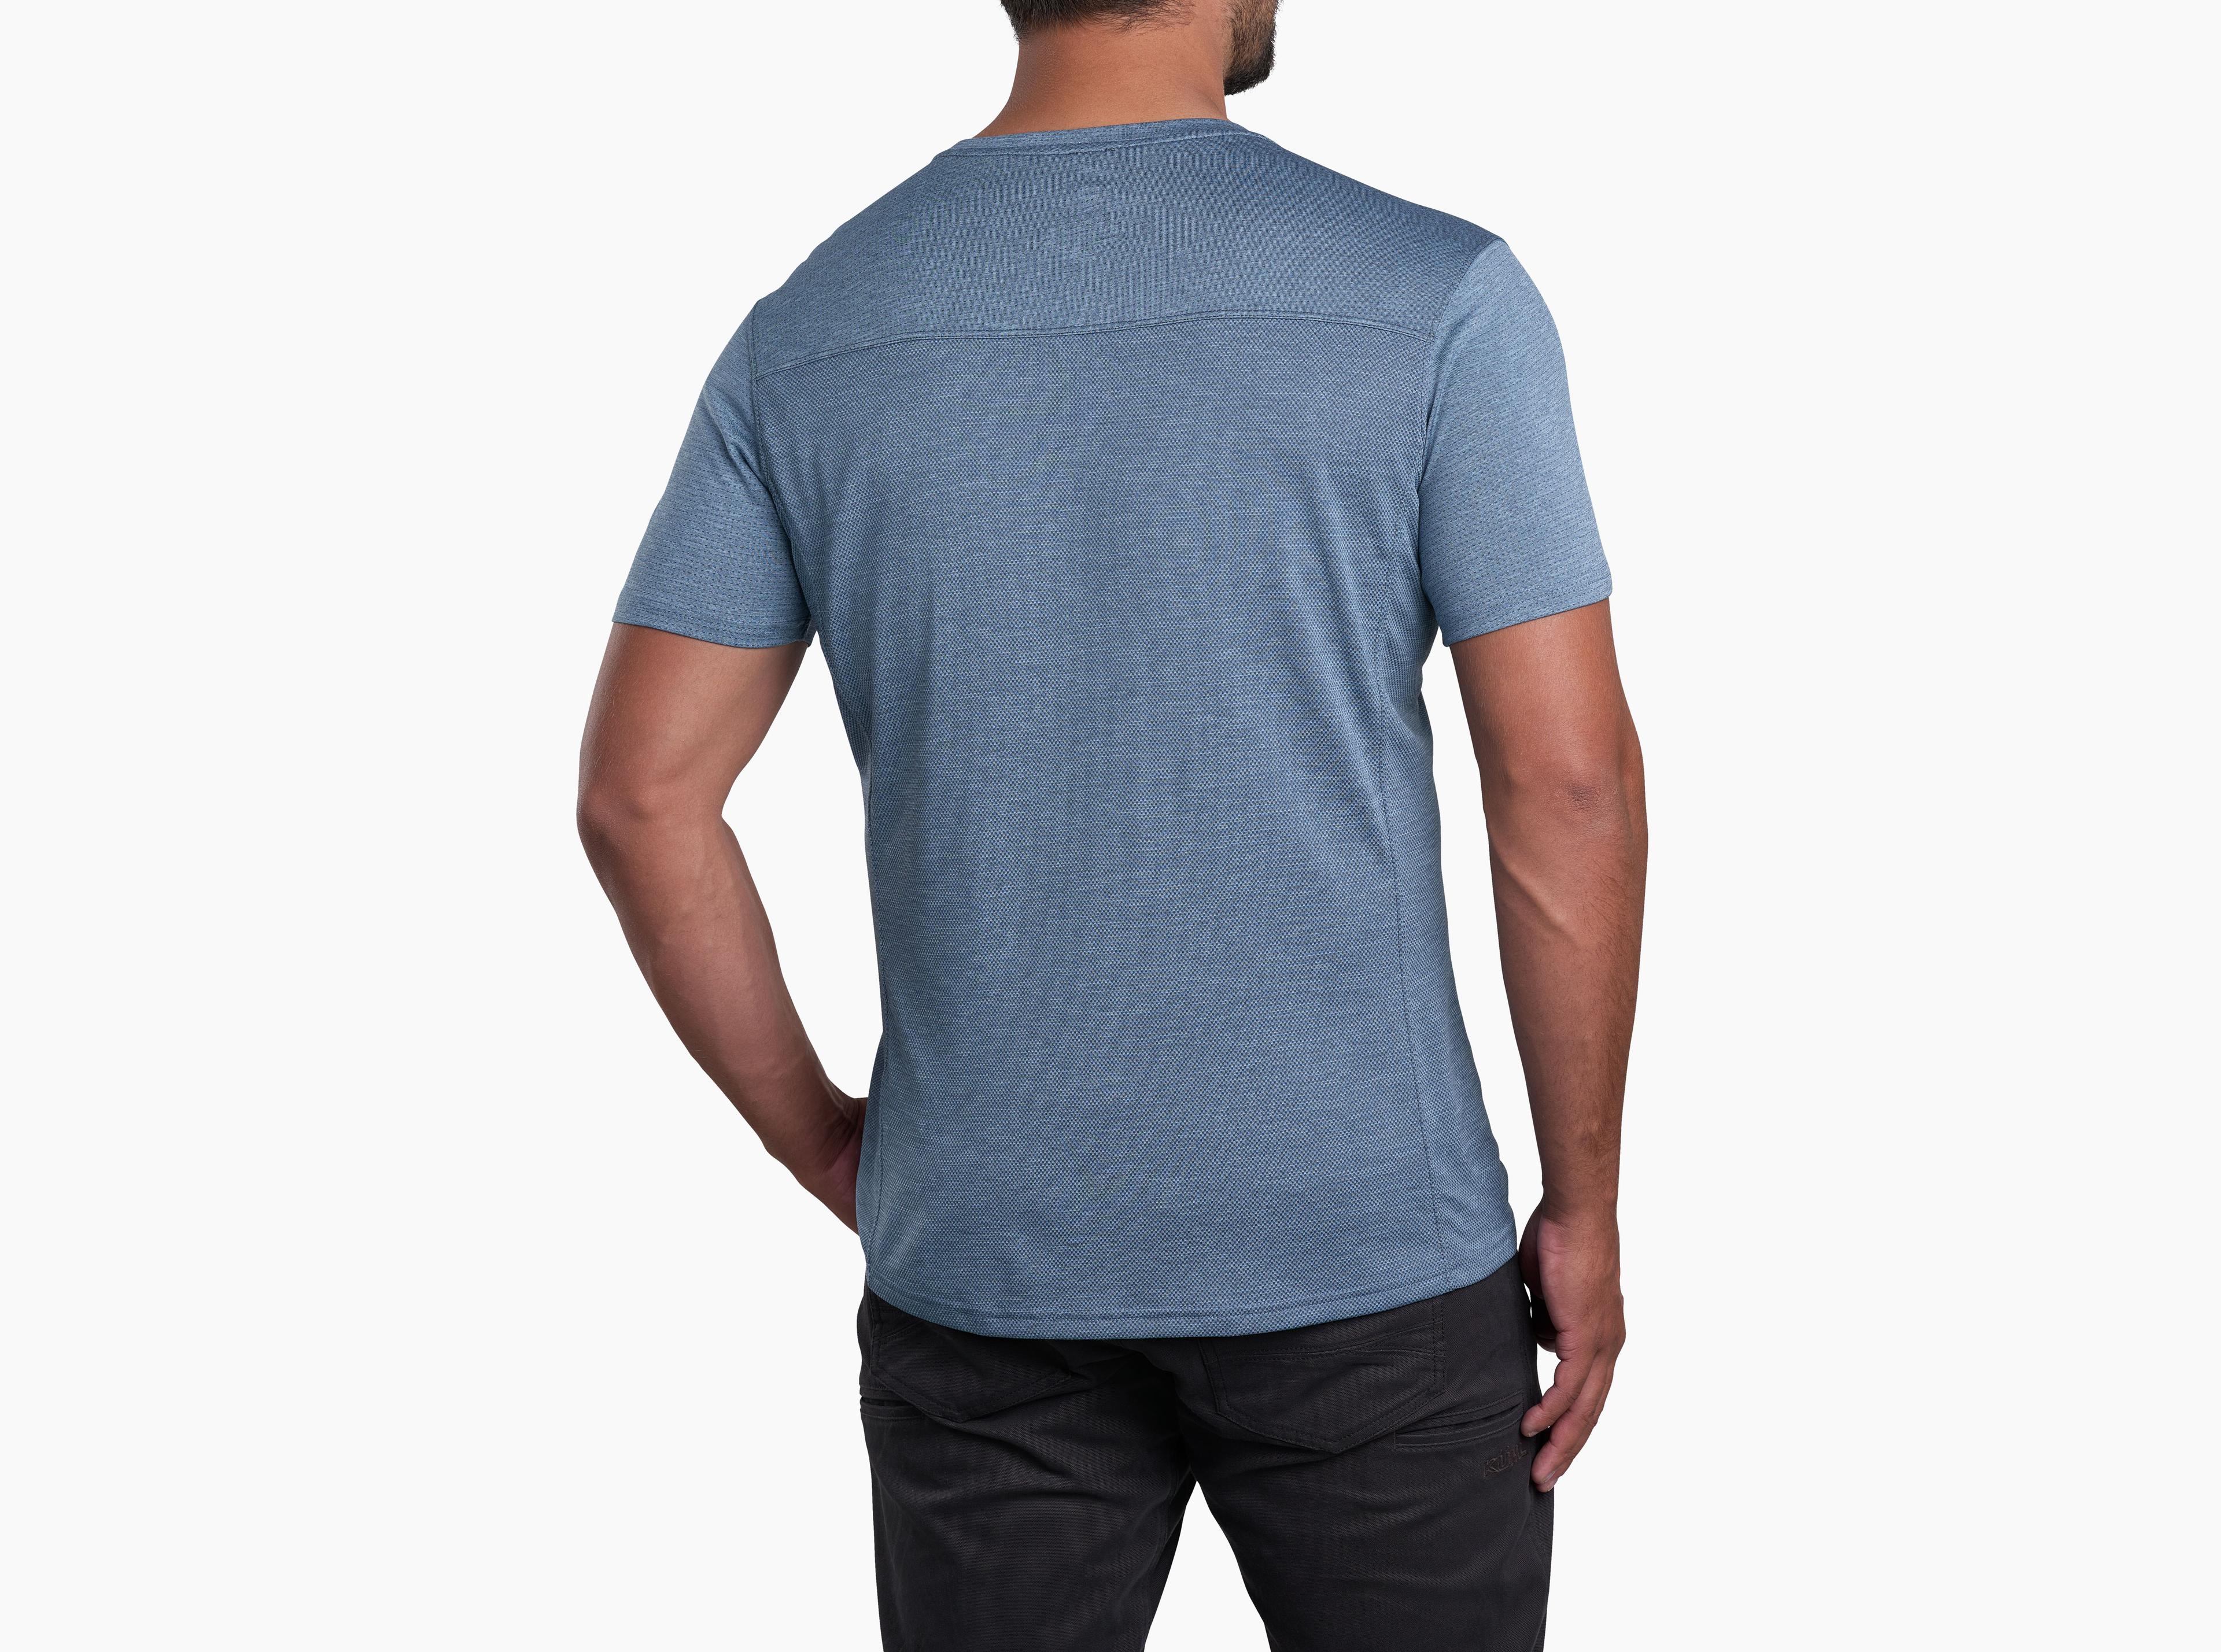 KÜHL Engineered™ Krew in Men's Short Sleeve | KÜHL Clothing